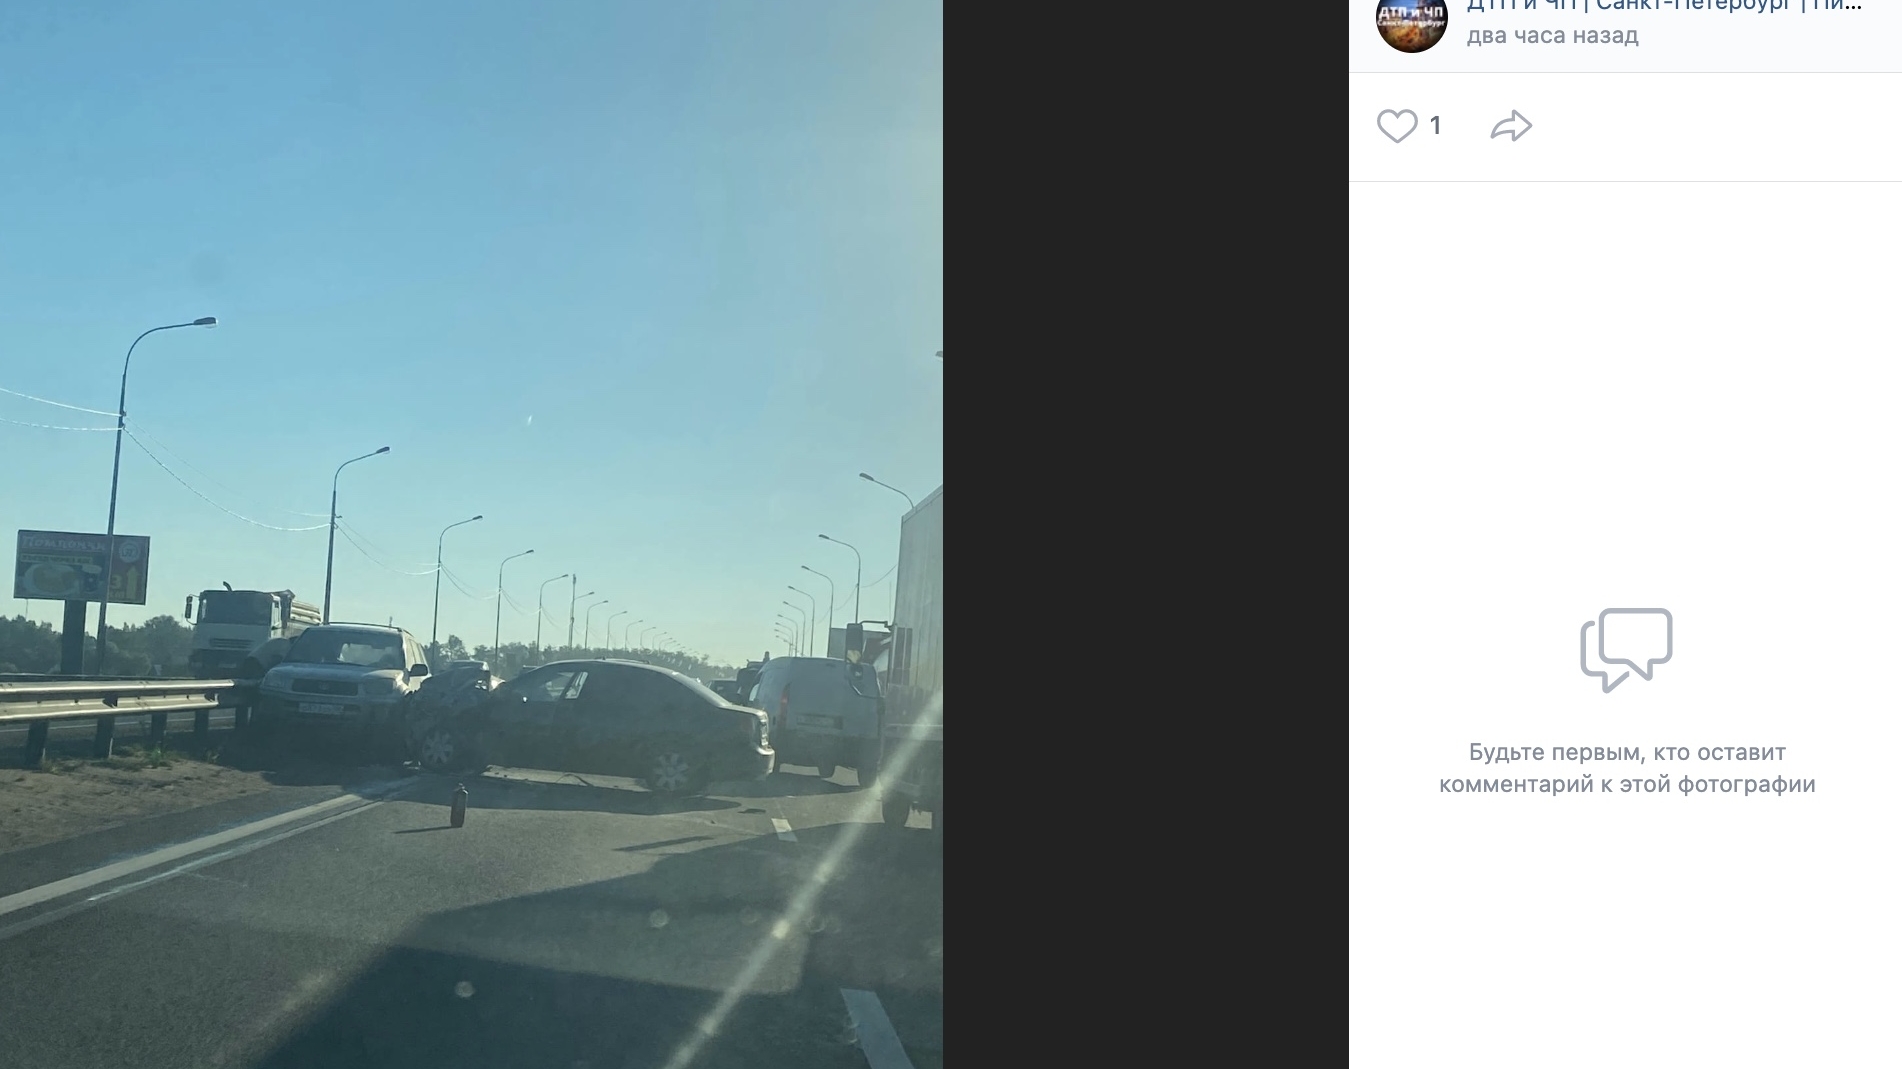 Гигантские пробки по обе стороны поймали водителей утром понедельника из-за ДТП на Мурманском шоссе